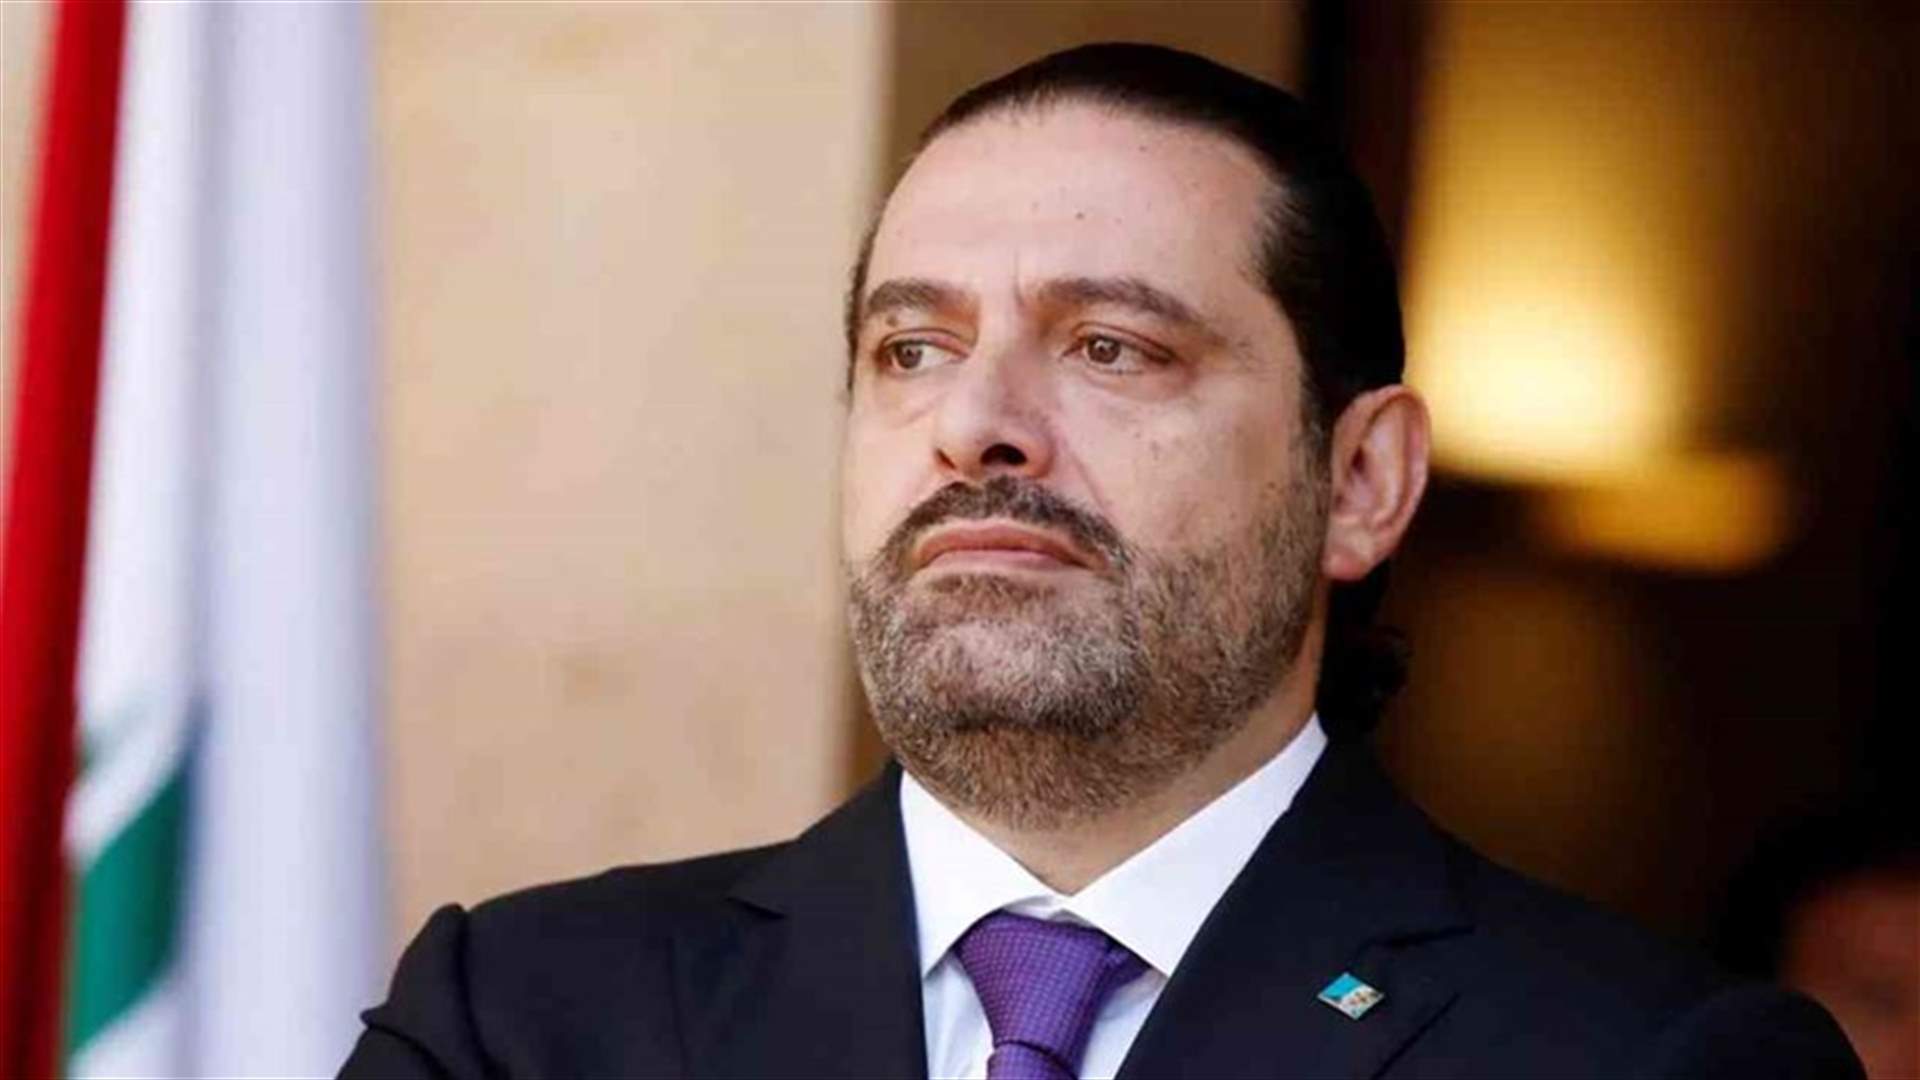 مستشار سعد الحريري: الرئيس غير معني بالتحليلات بشأن عودته الى رئاسة الحكومة